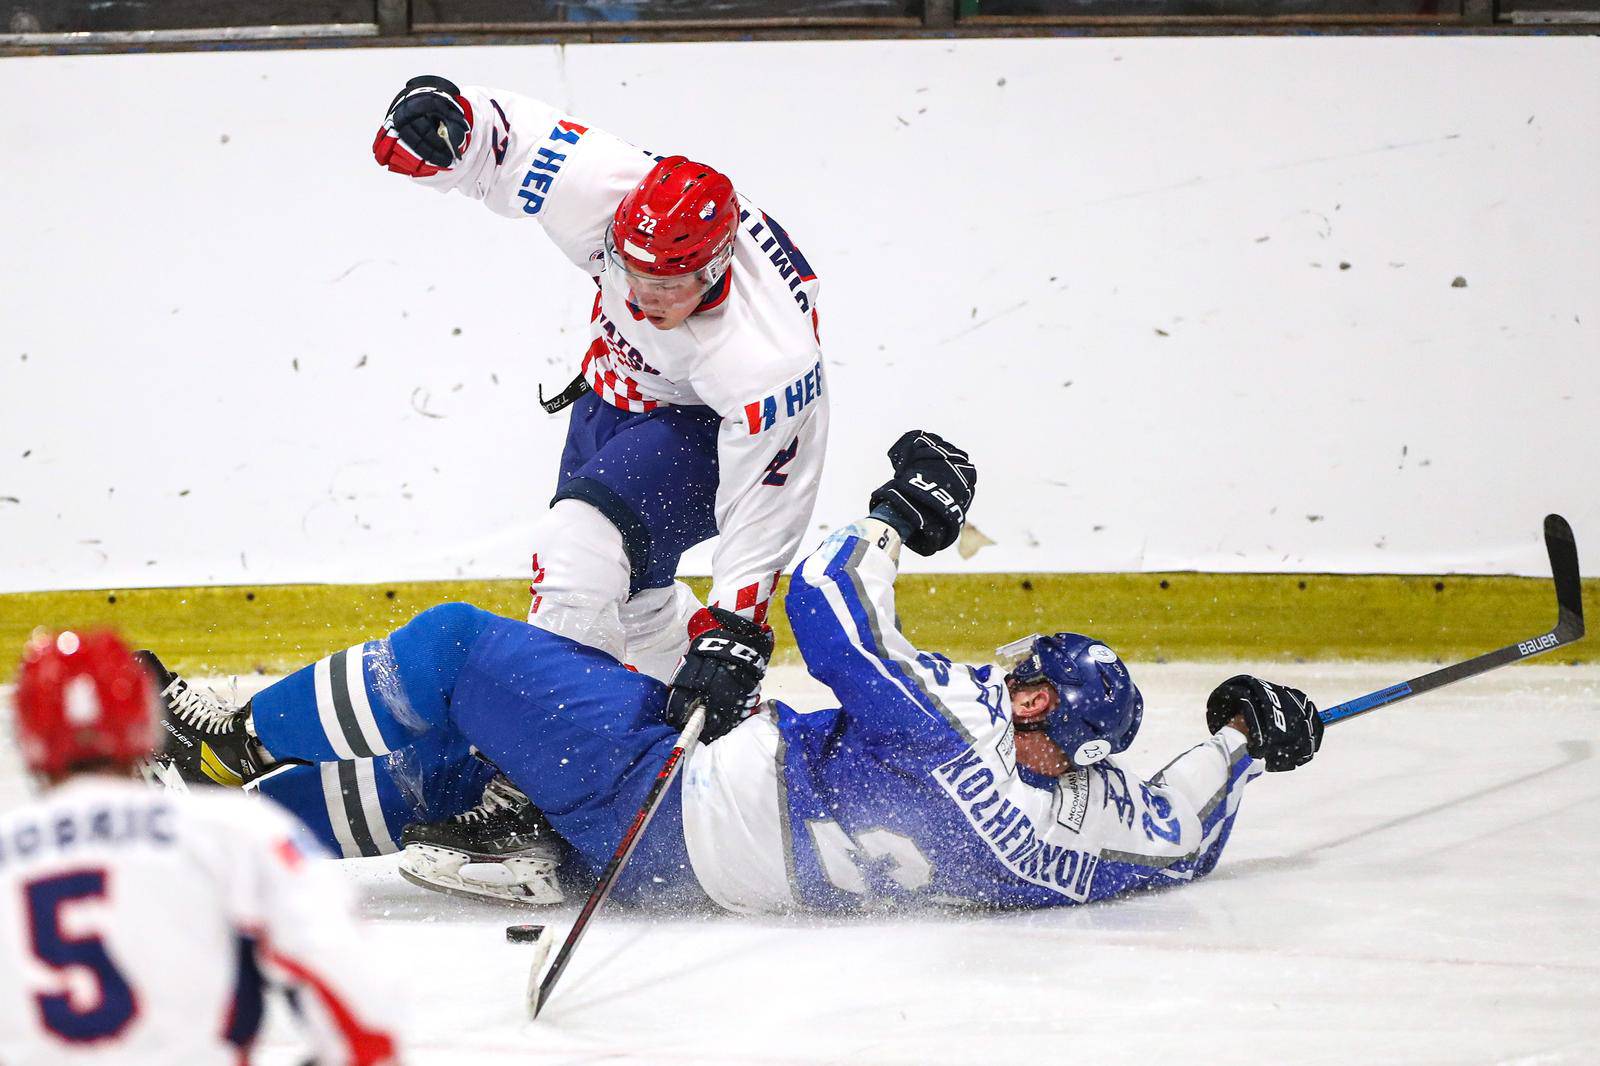 Utakmica 1. kola Svjetskog prvenstva Divizije II skupine A u hokeju na ledu: Hrvatska - Izrael